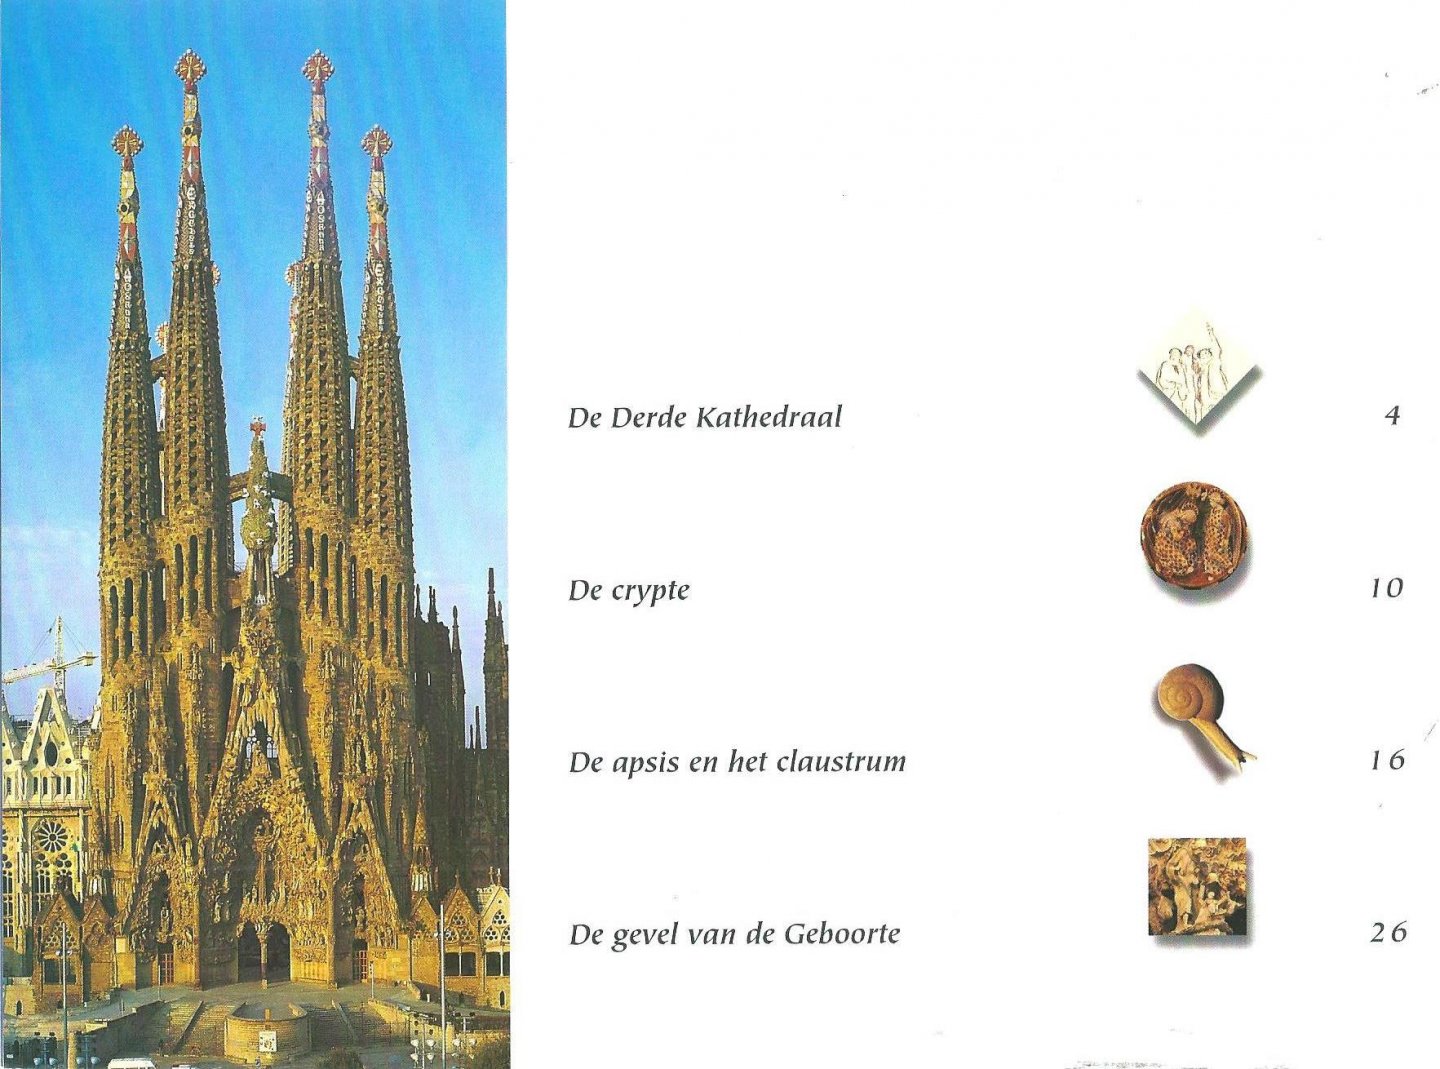 Carandell, Josep (tekst) ; Vivas, Pere (foto’s) - De kerk van de Sagrada Familia Barcelona